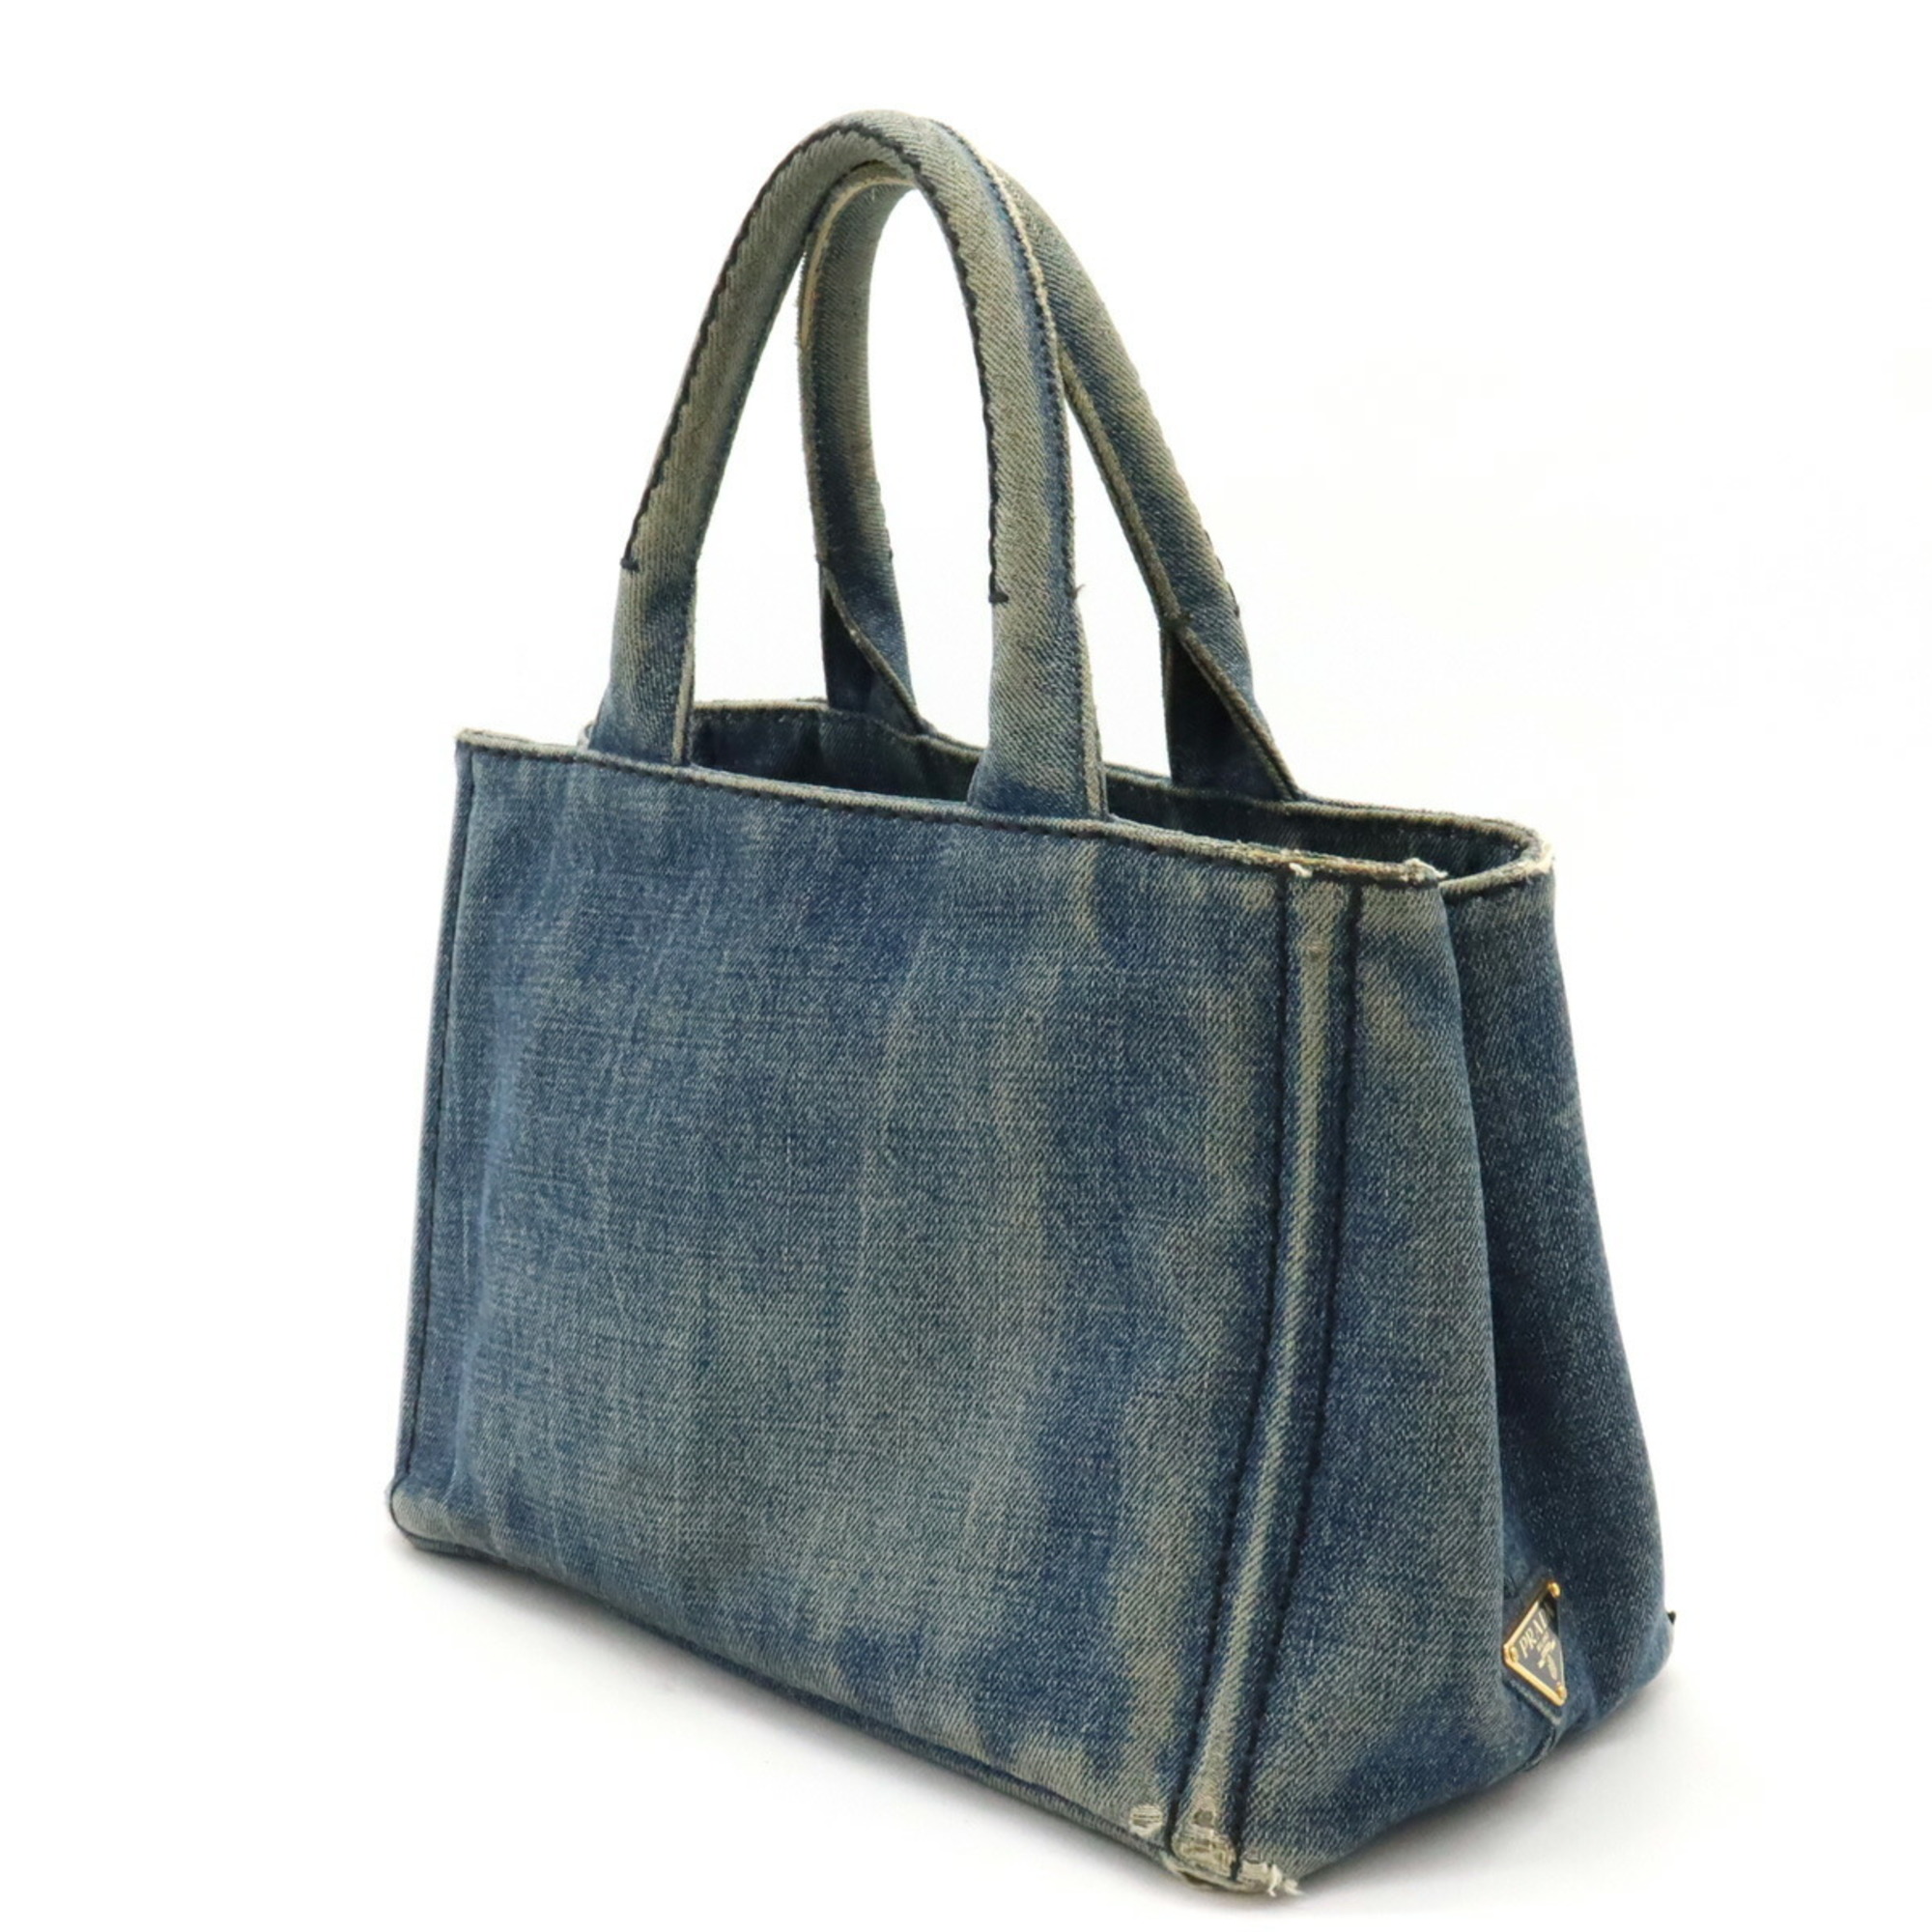 PRADA CANAPA tote bag, handbag, denim, blue